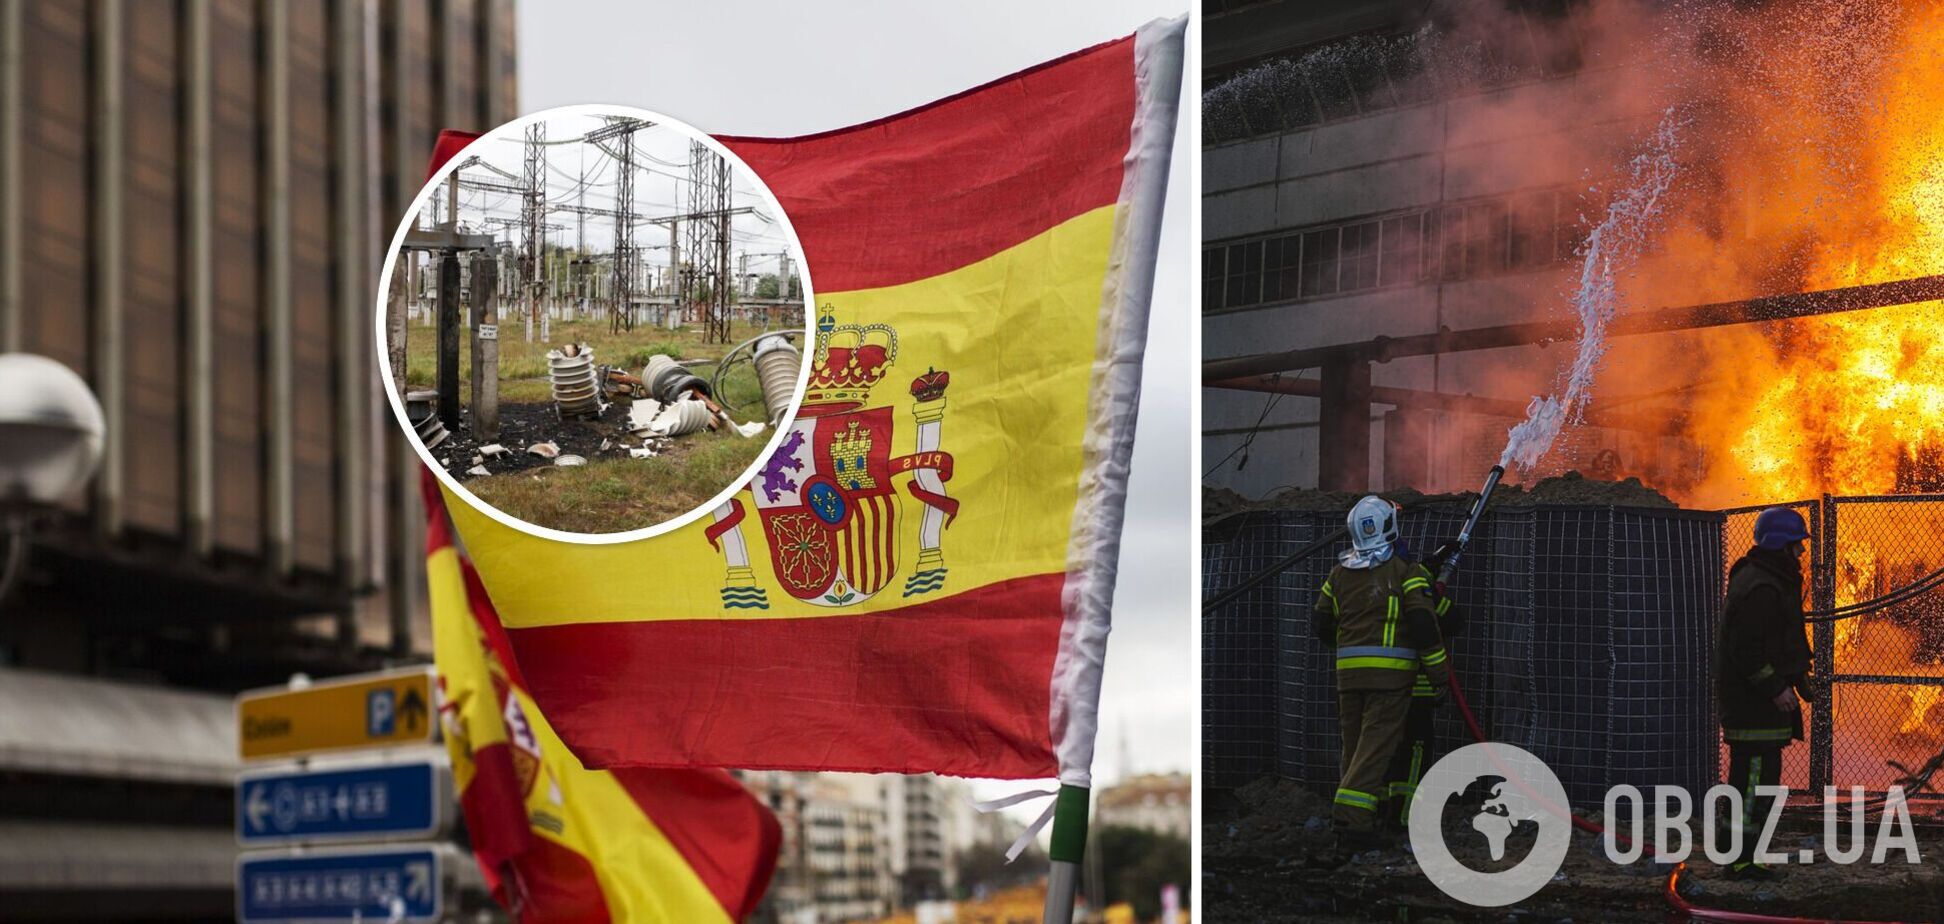 Іспанія відгукнулася на прохання України про генератори: допоможуть пережити атаки на енергетичну інфраструктуру